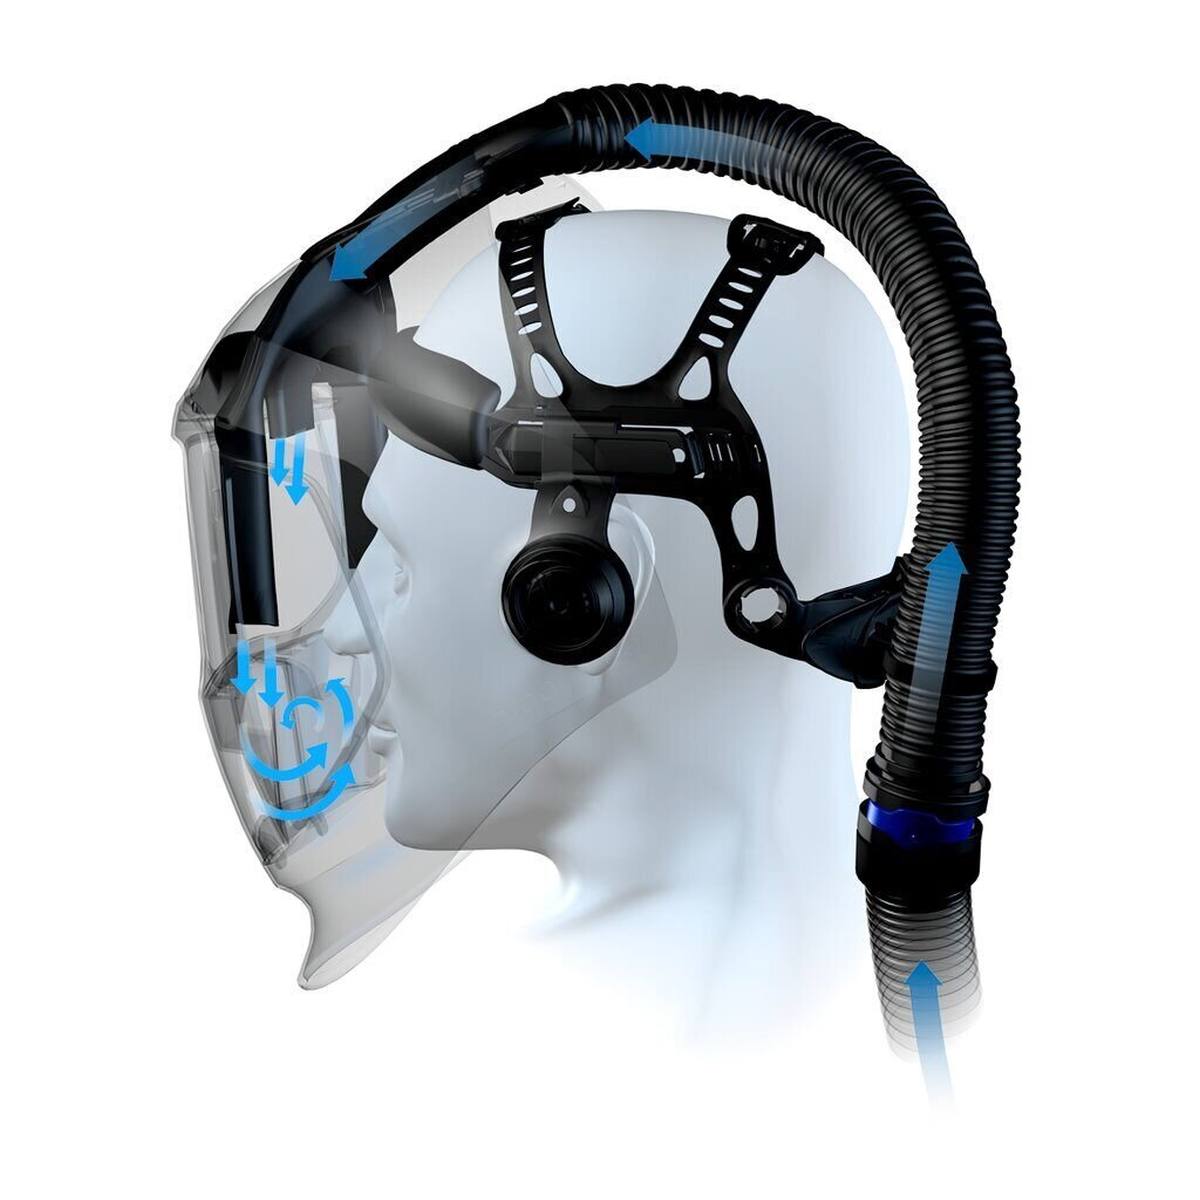 Masque de soudure 3M Speedglas 9100 Air avec 9100XX ADF, avec protection respiratoire à air comprimé Versaflo V-500E, sac de rangement inclus 79 01 01 #568525